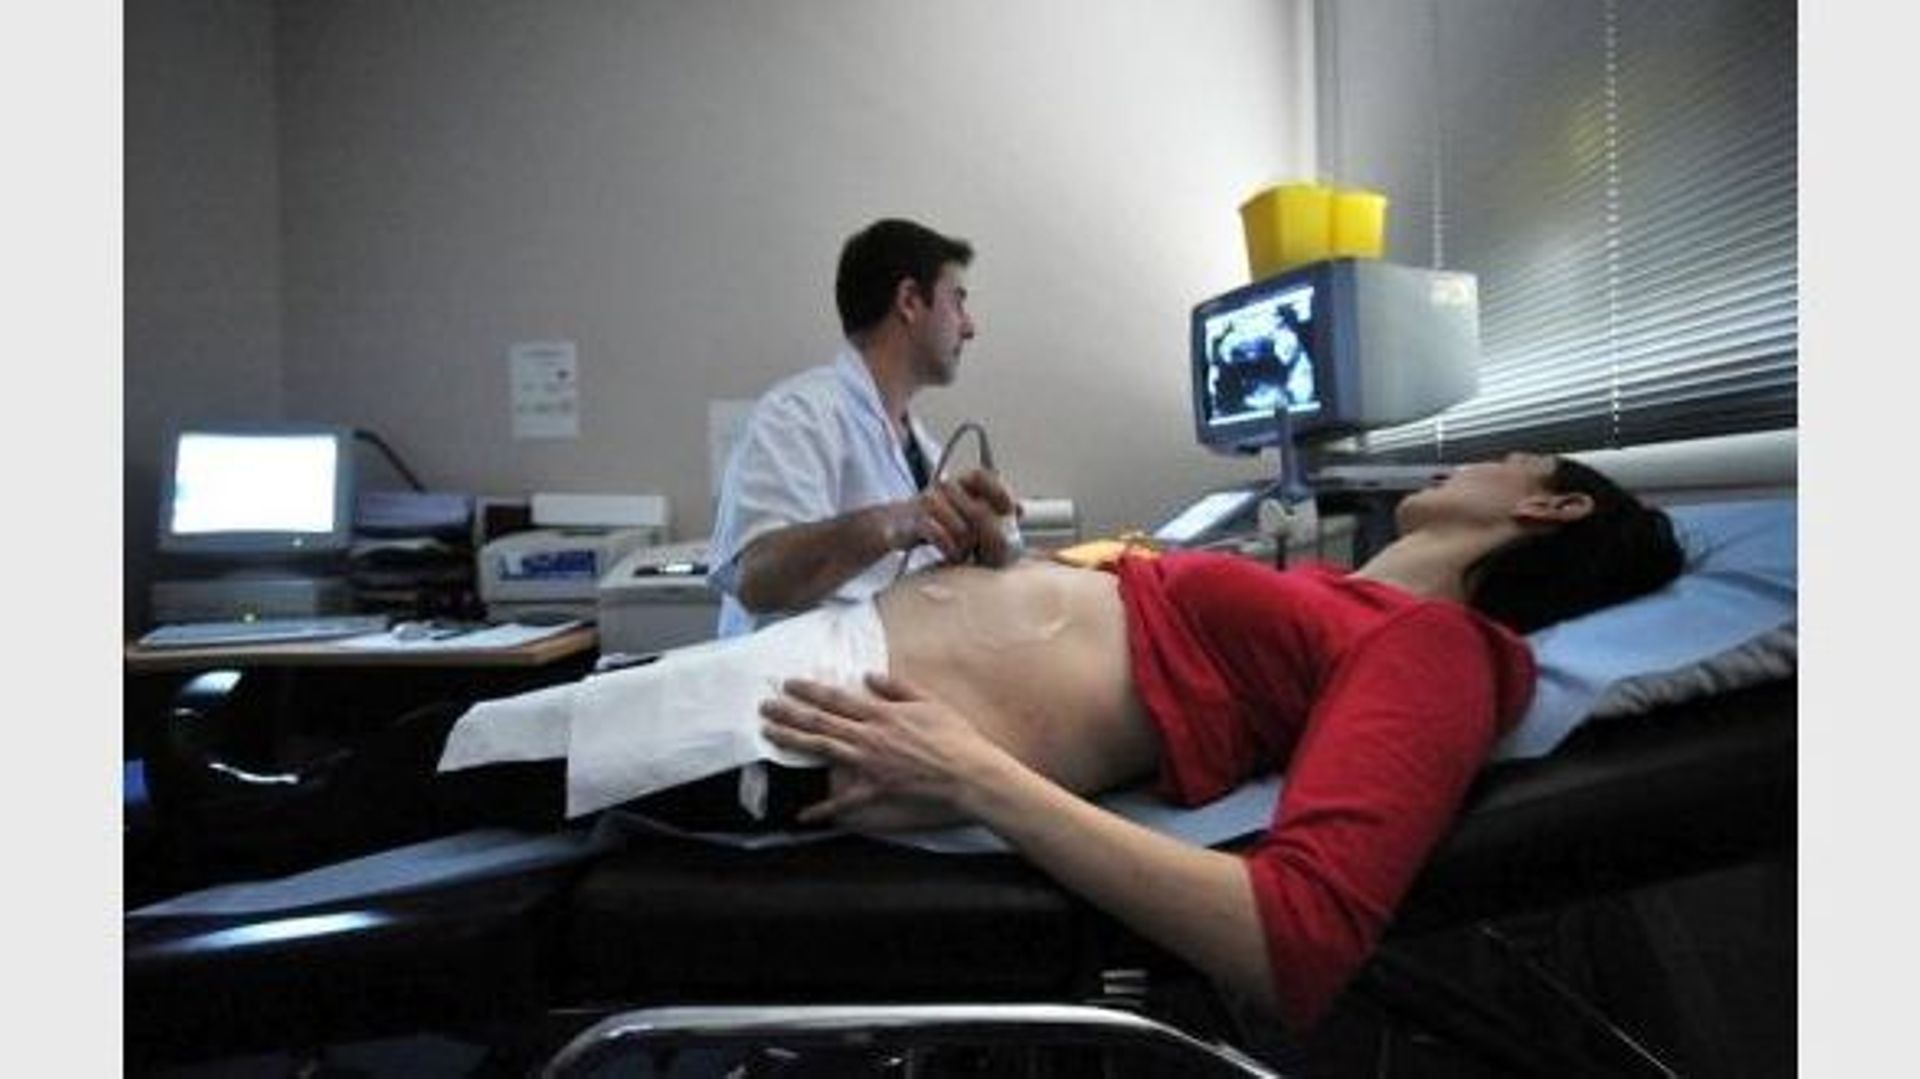 Le placenta, premier responsable des morts de foetus in utero ...